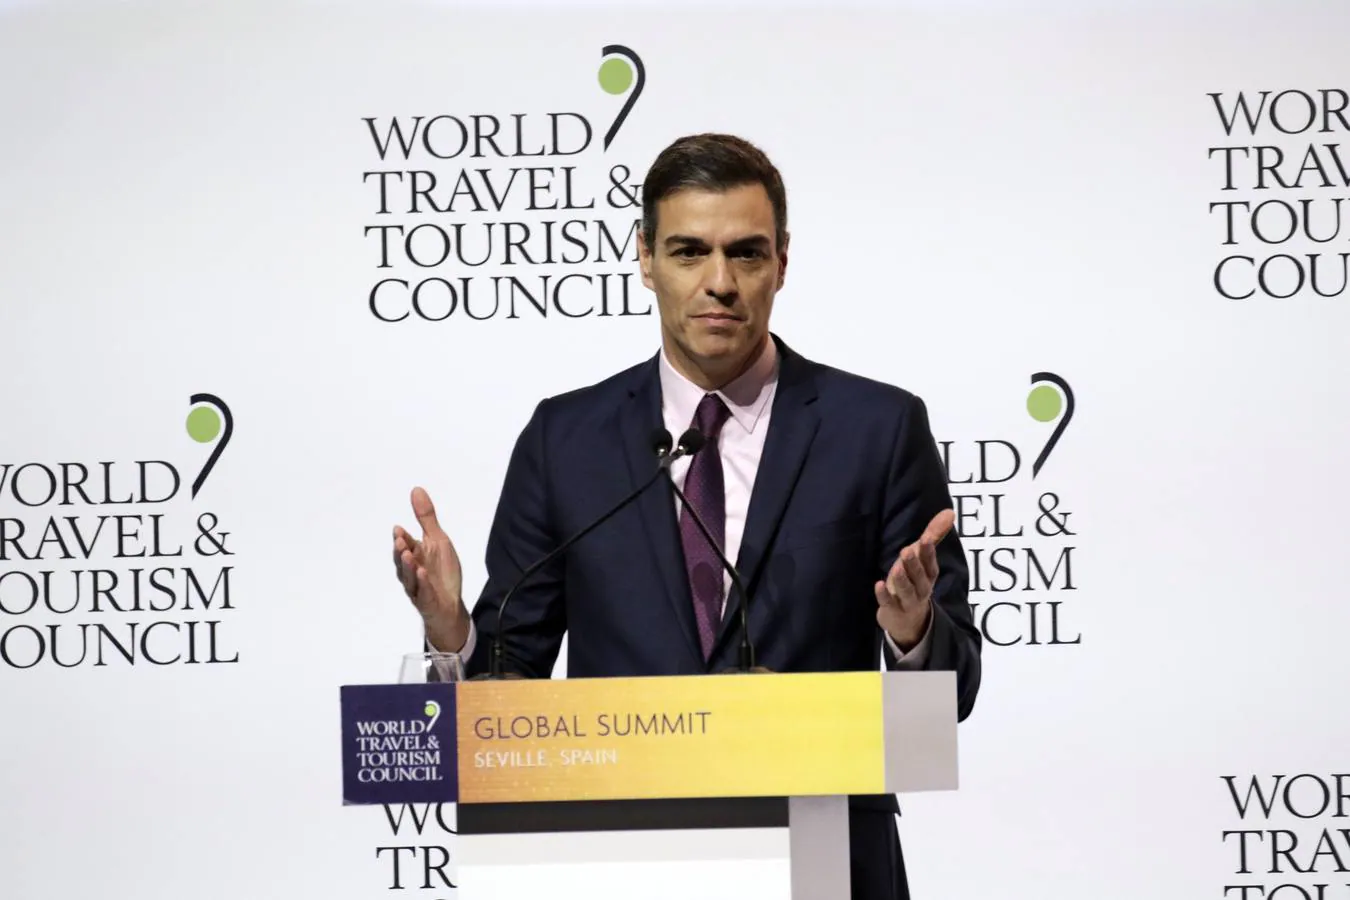 La cumbre del consejo mundial de turismo, en imágenes